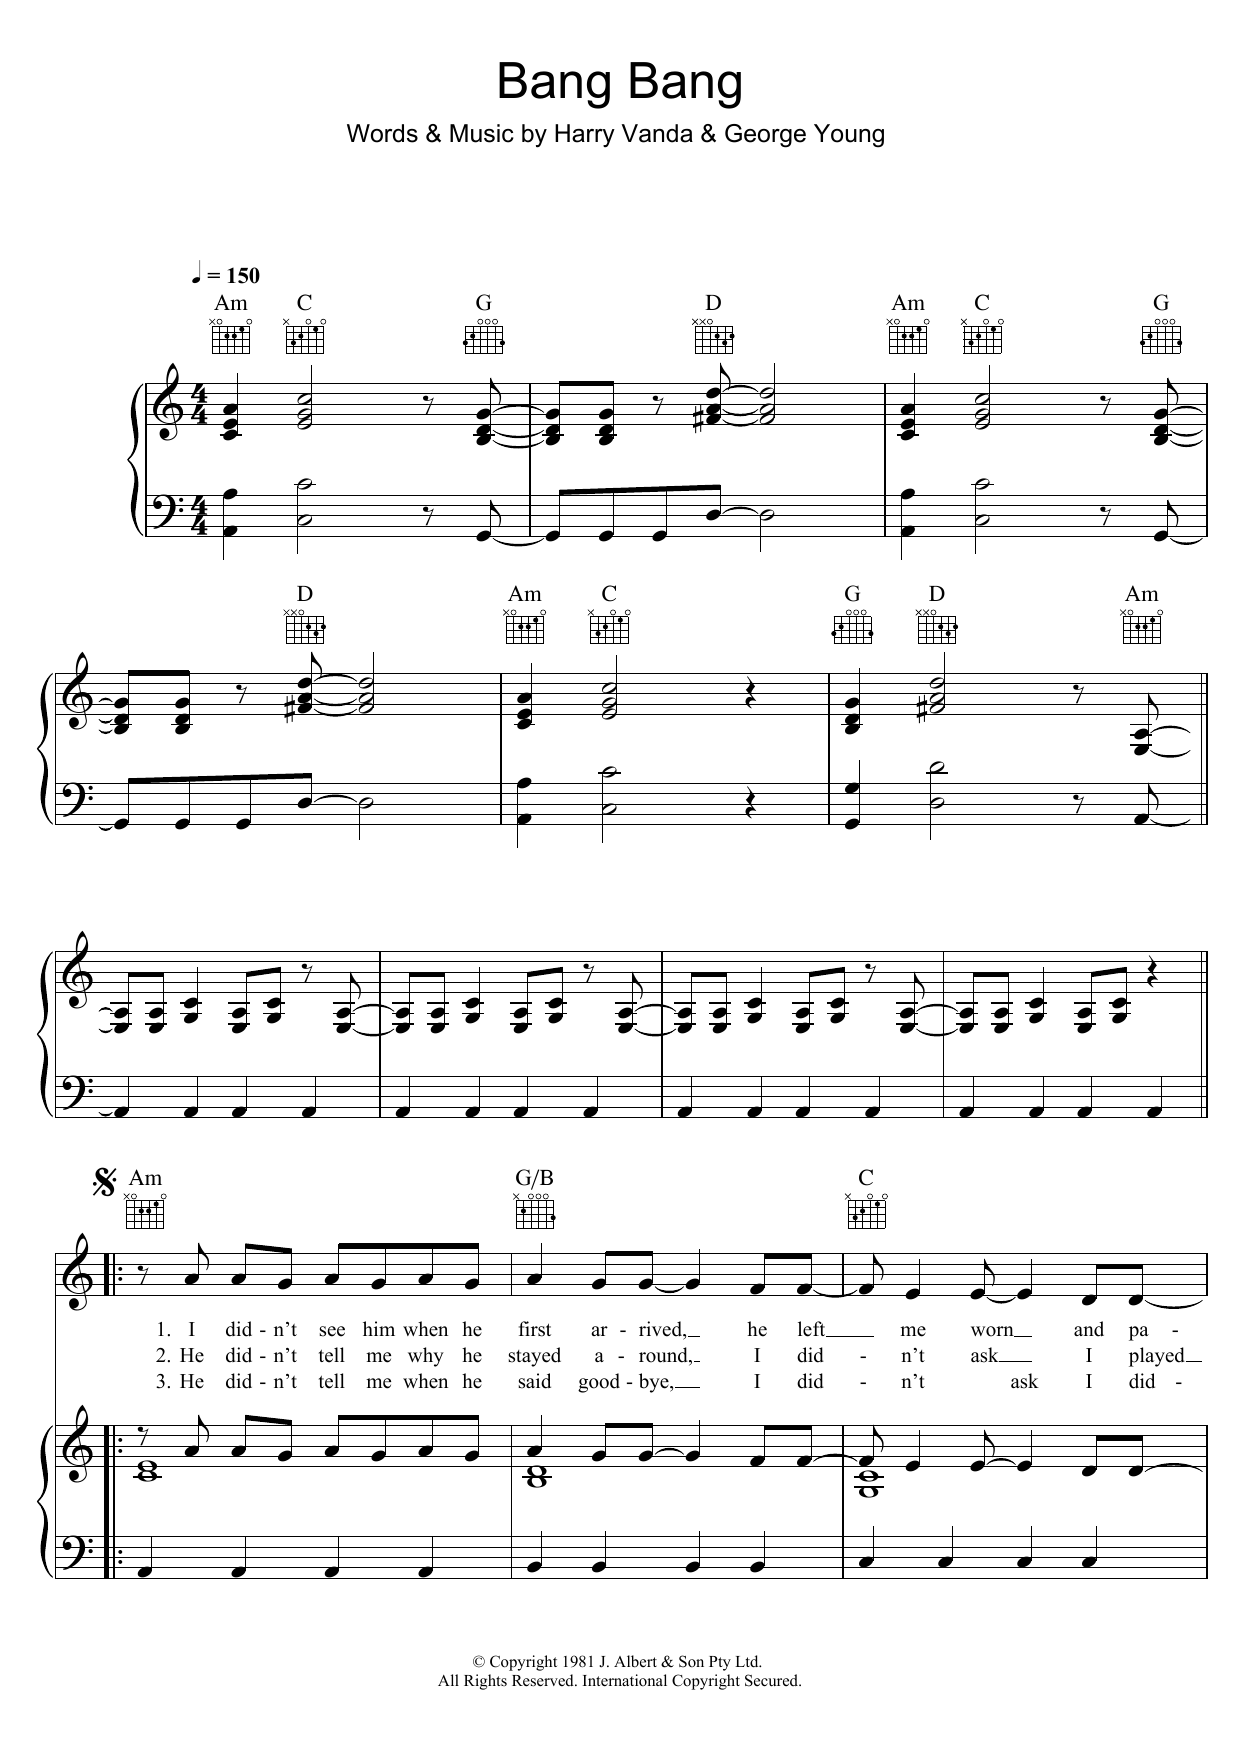 Cheetah Bang Bang Sheet Music Notes & Chords for Piano, Vocal & Guitar (Right-Hand Melody) - Download or Print PDF